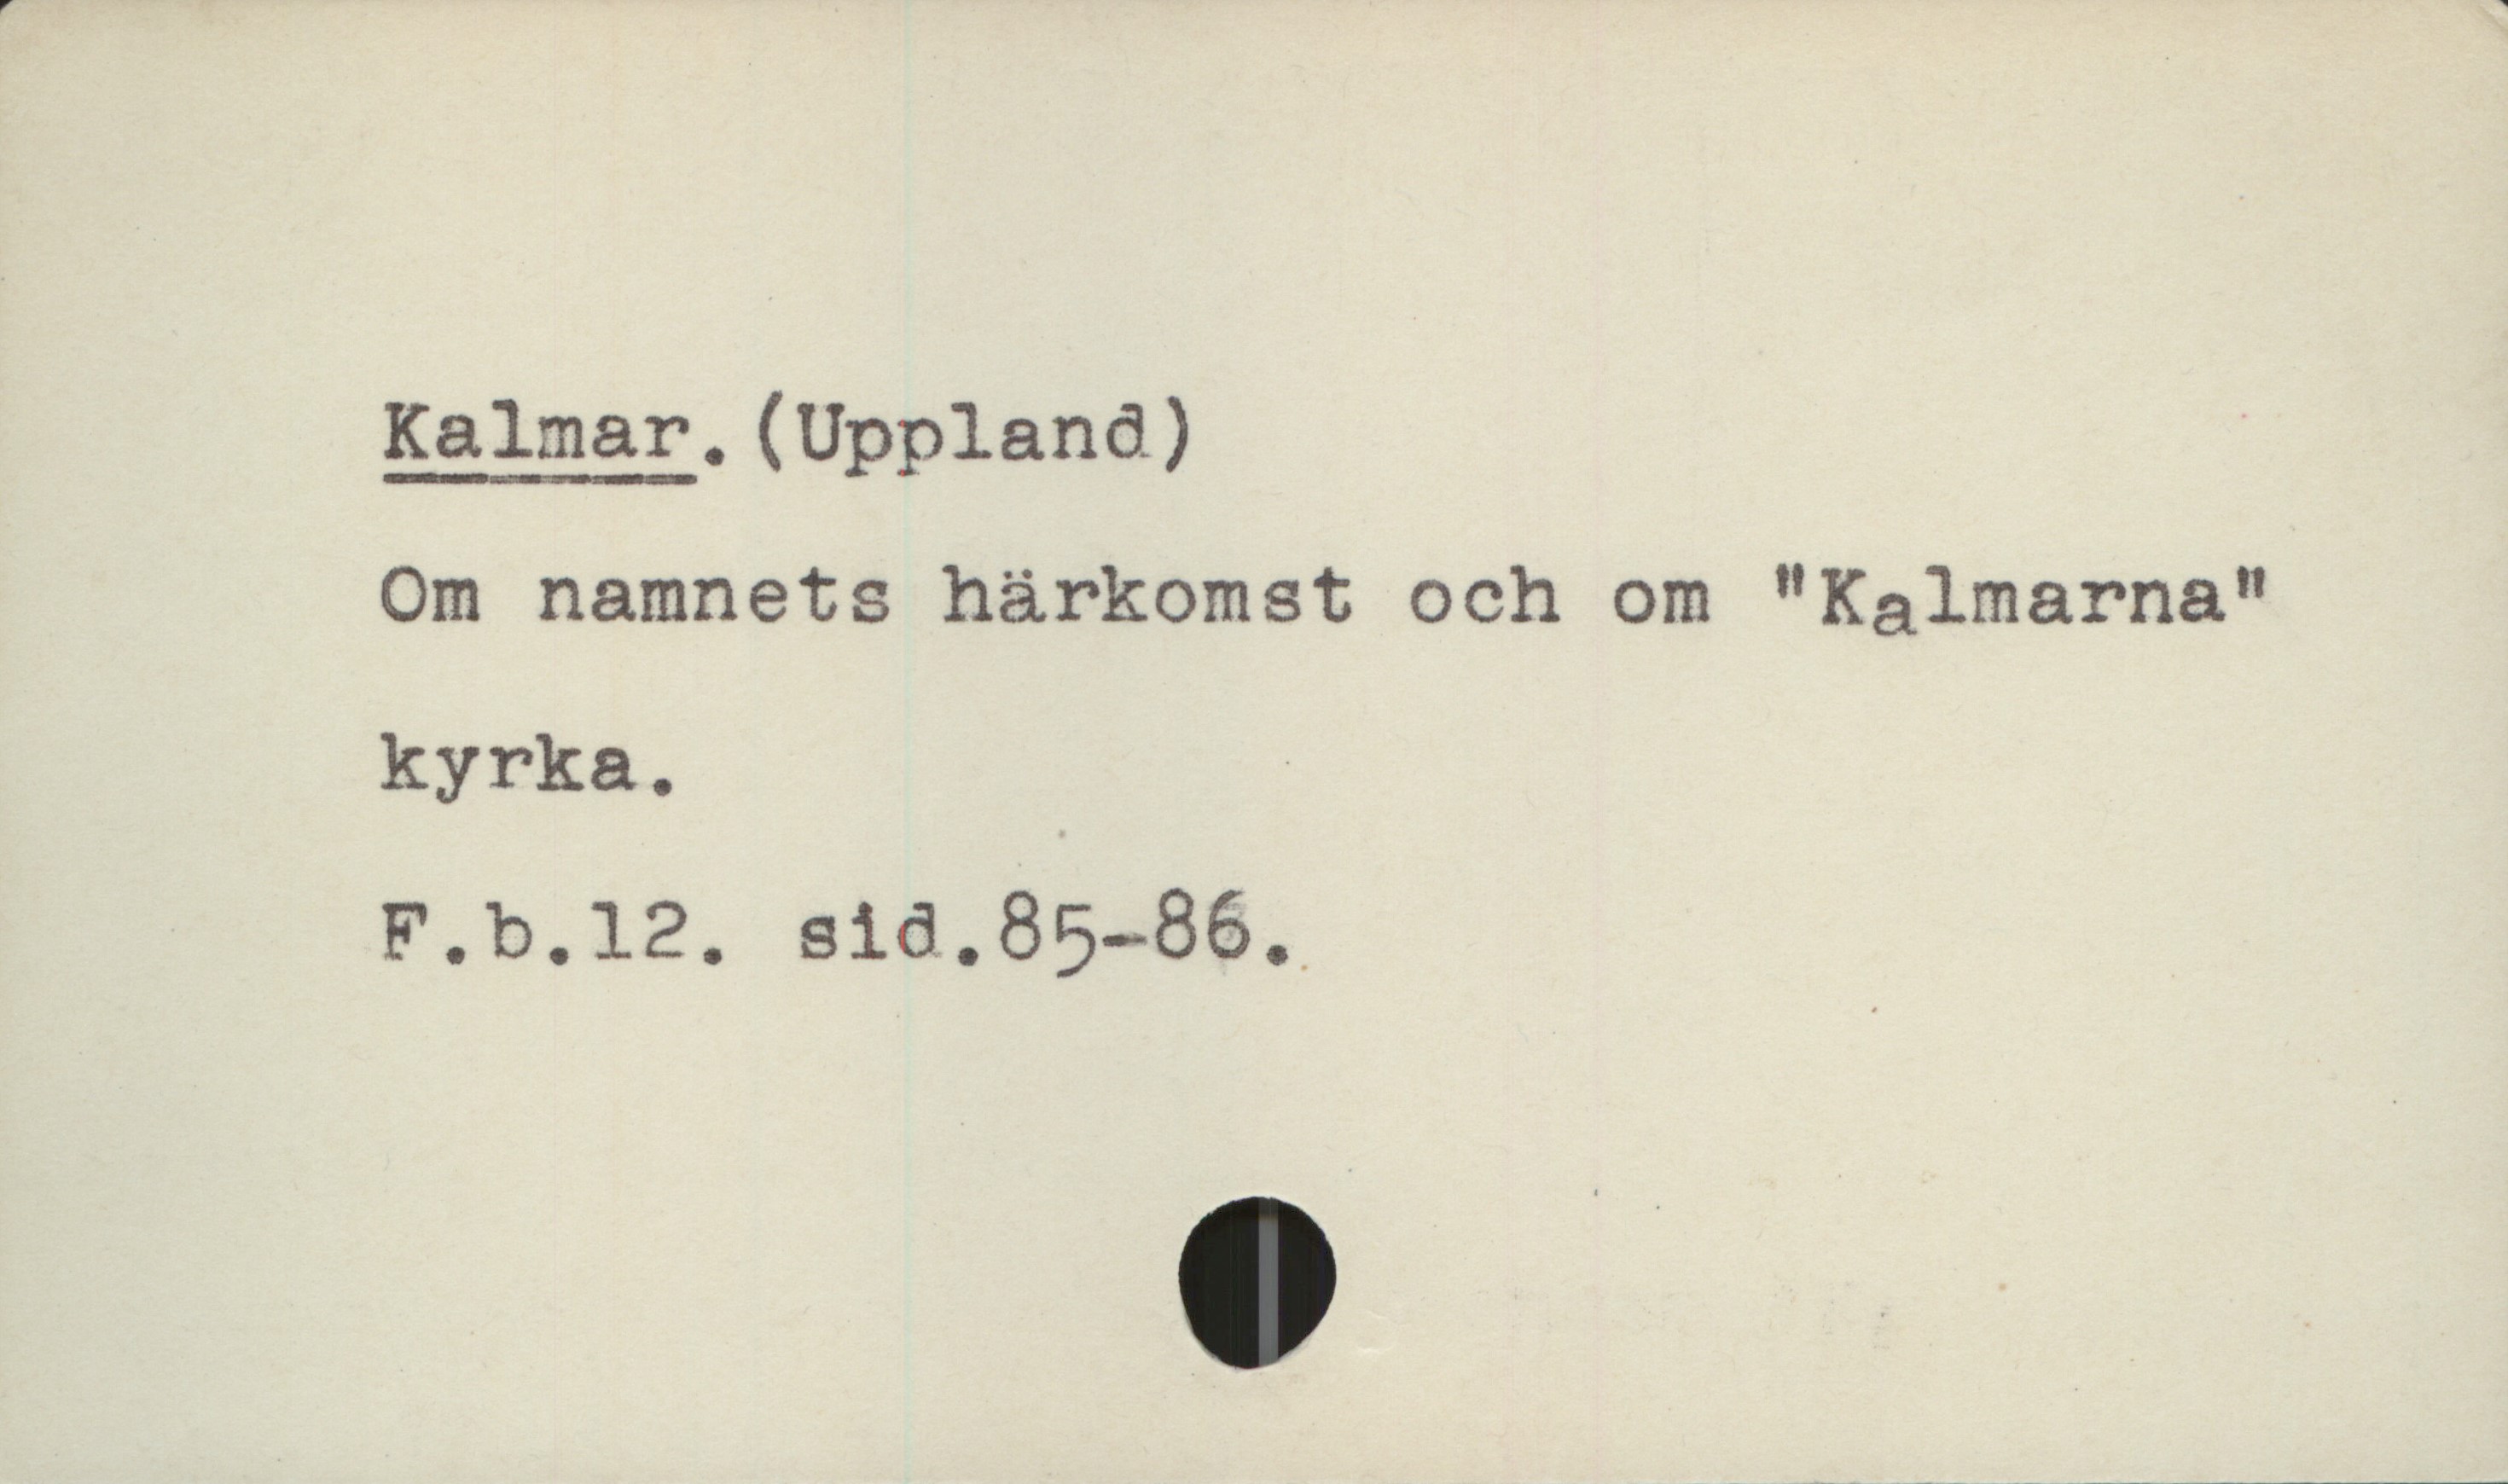  Kalmar. (Uppland)

Om namnets härkomst och om "Kalmarna"
kyrka., '

F.b.l2. sid.85-86.

